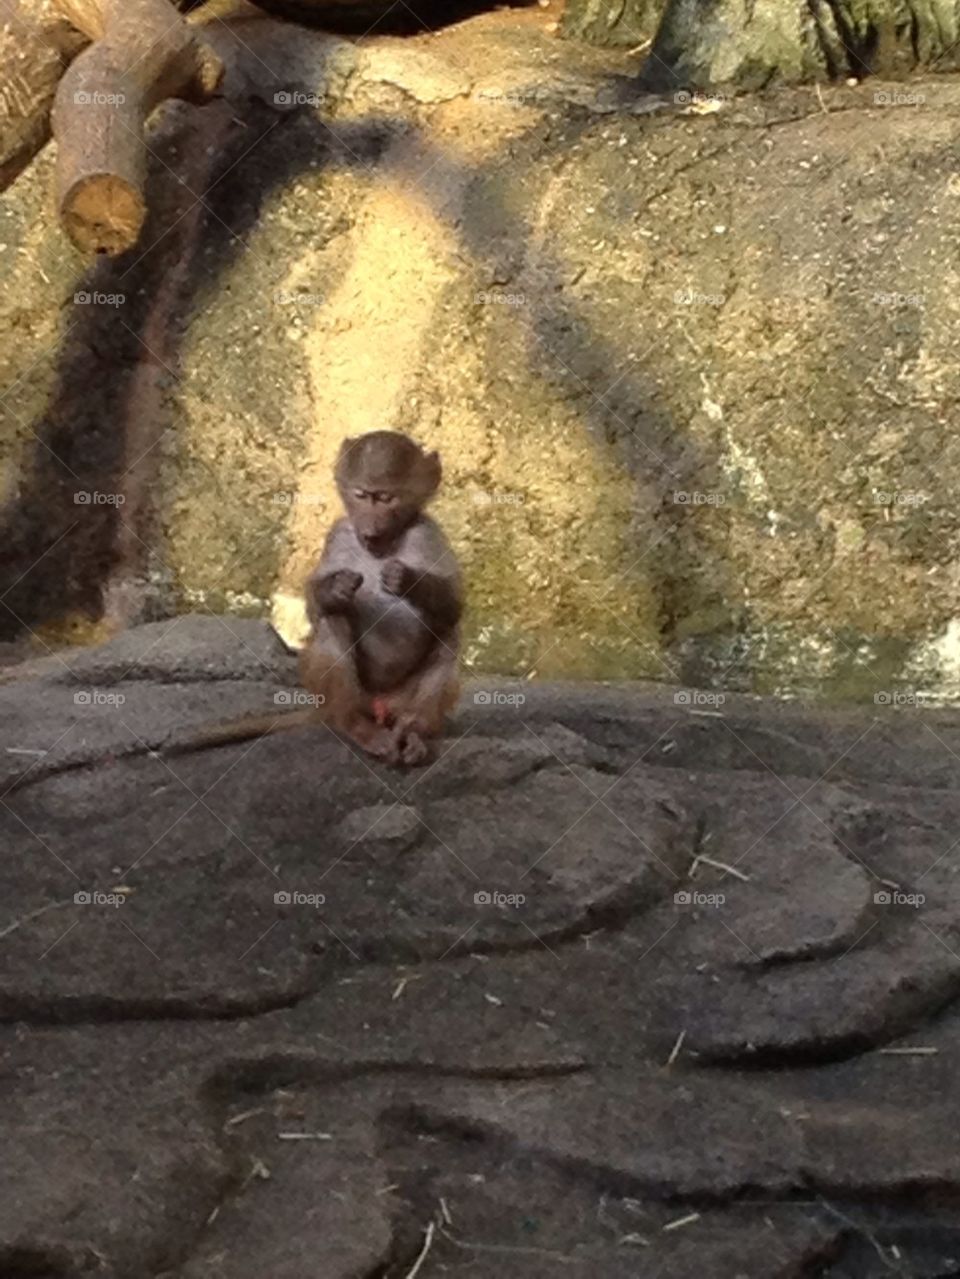 Monkey baby